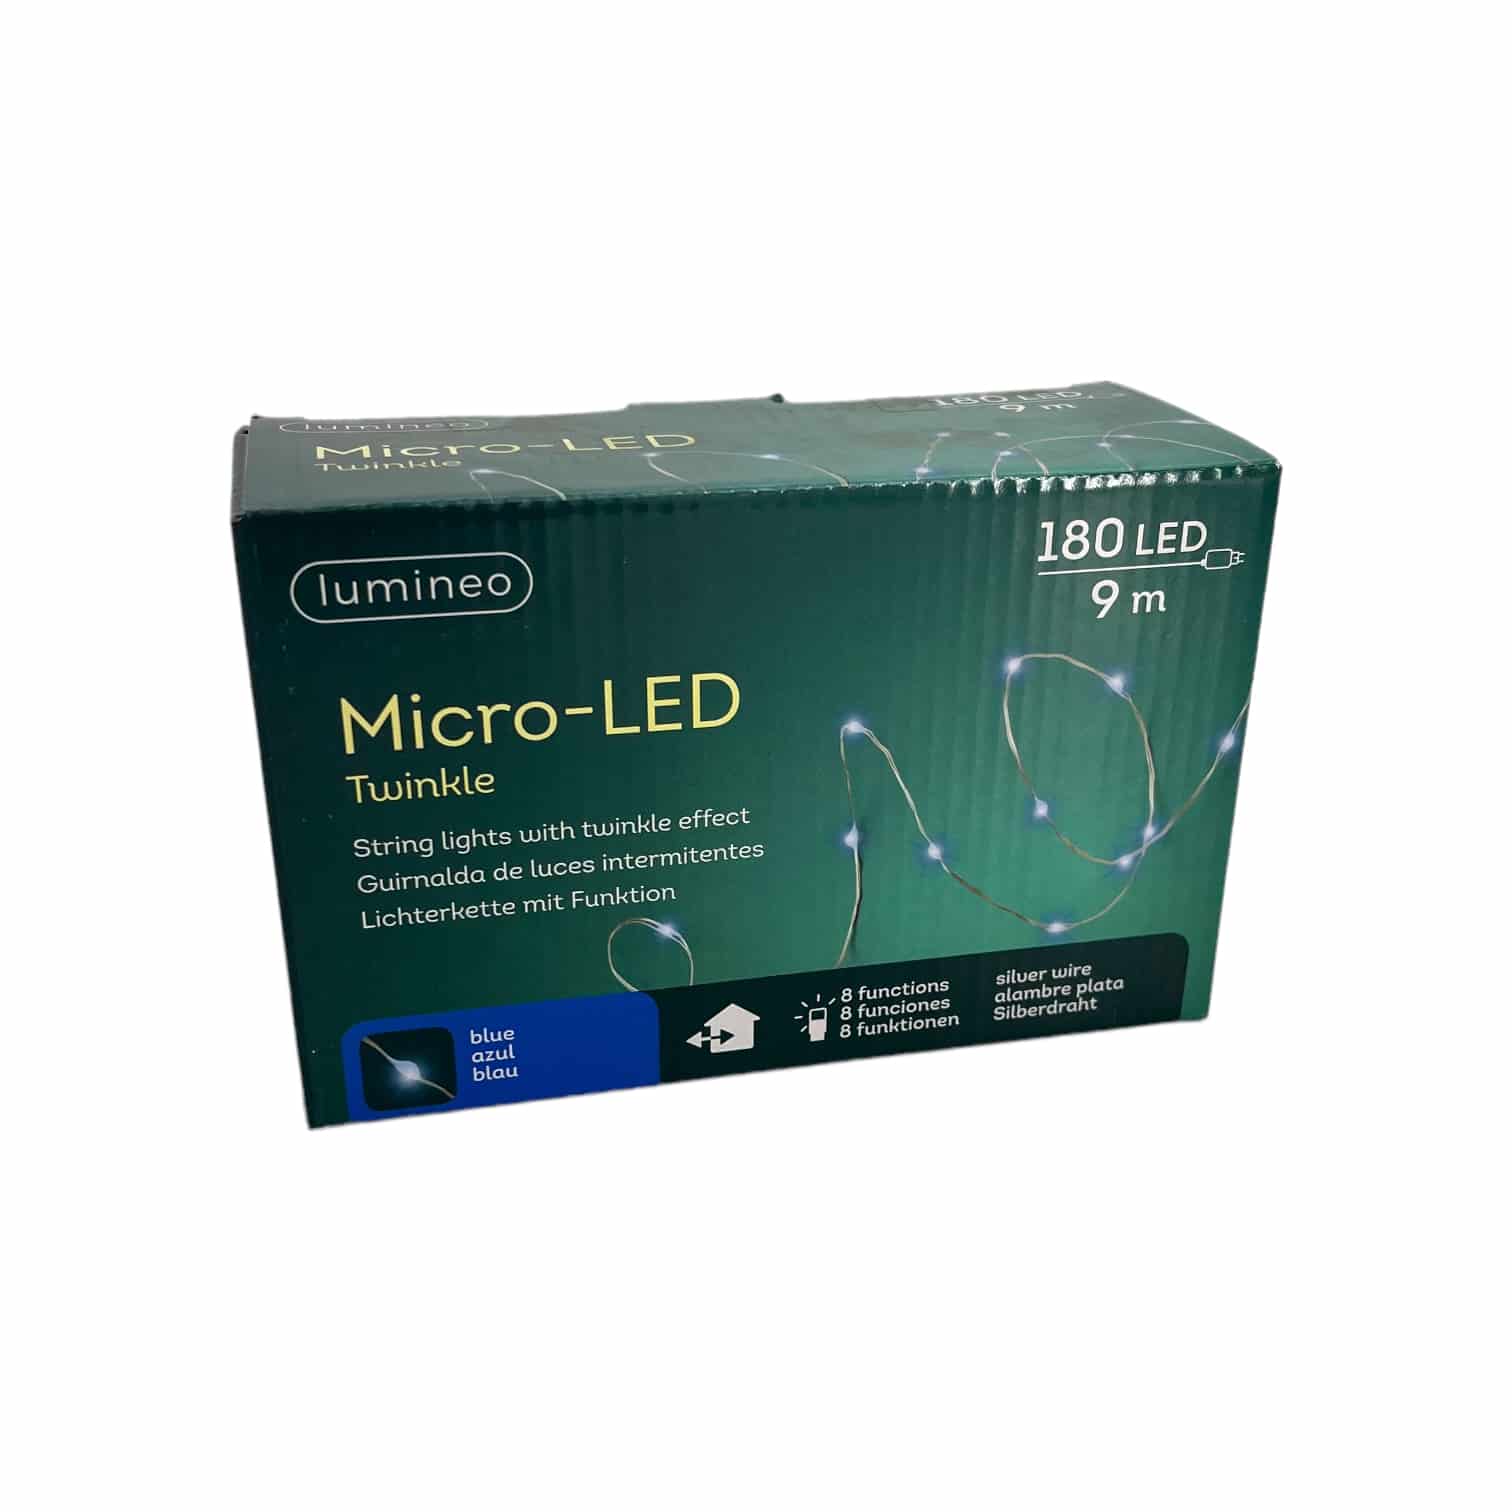 180 LED Micro-LED Twinkle Lichterkette - blau